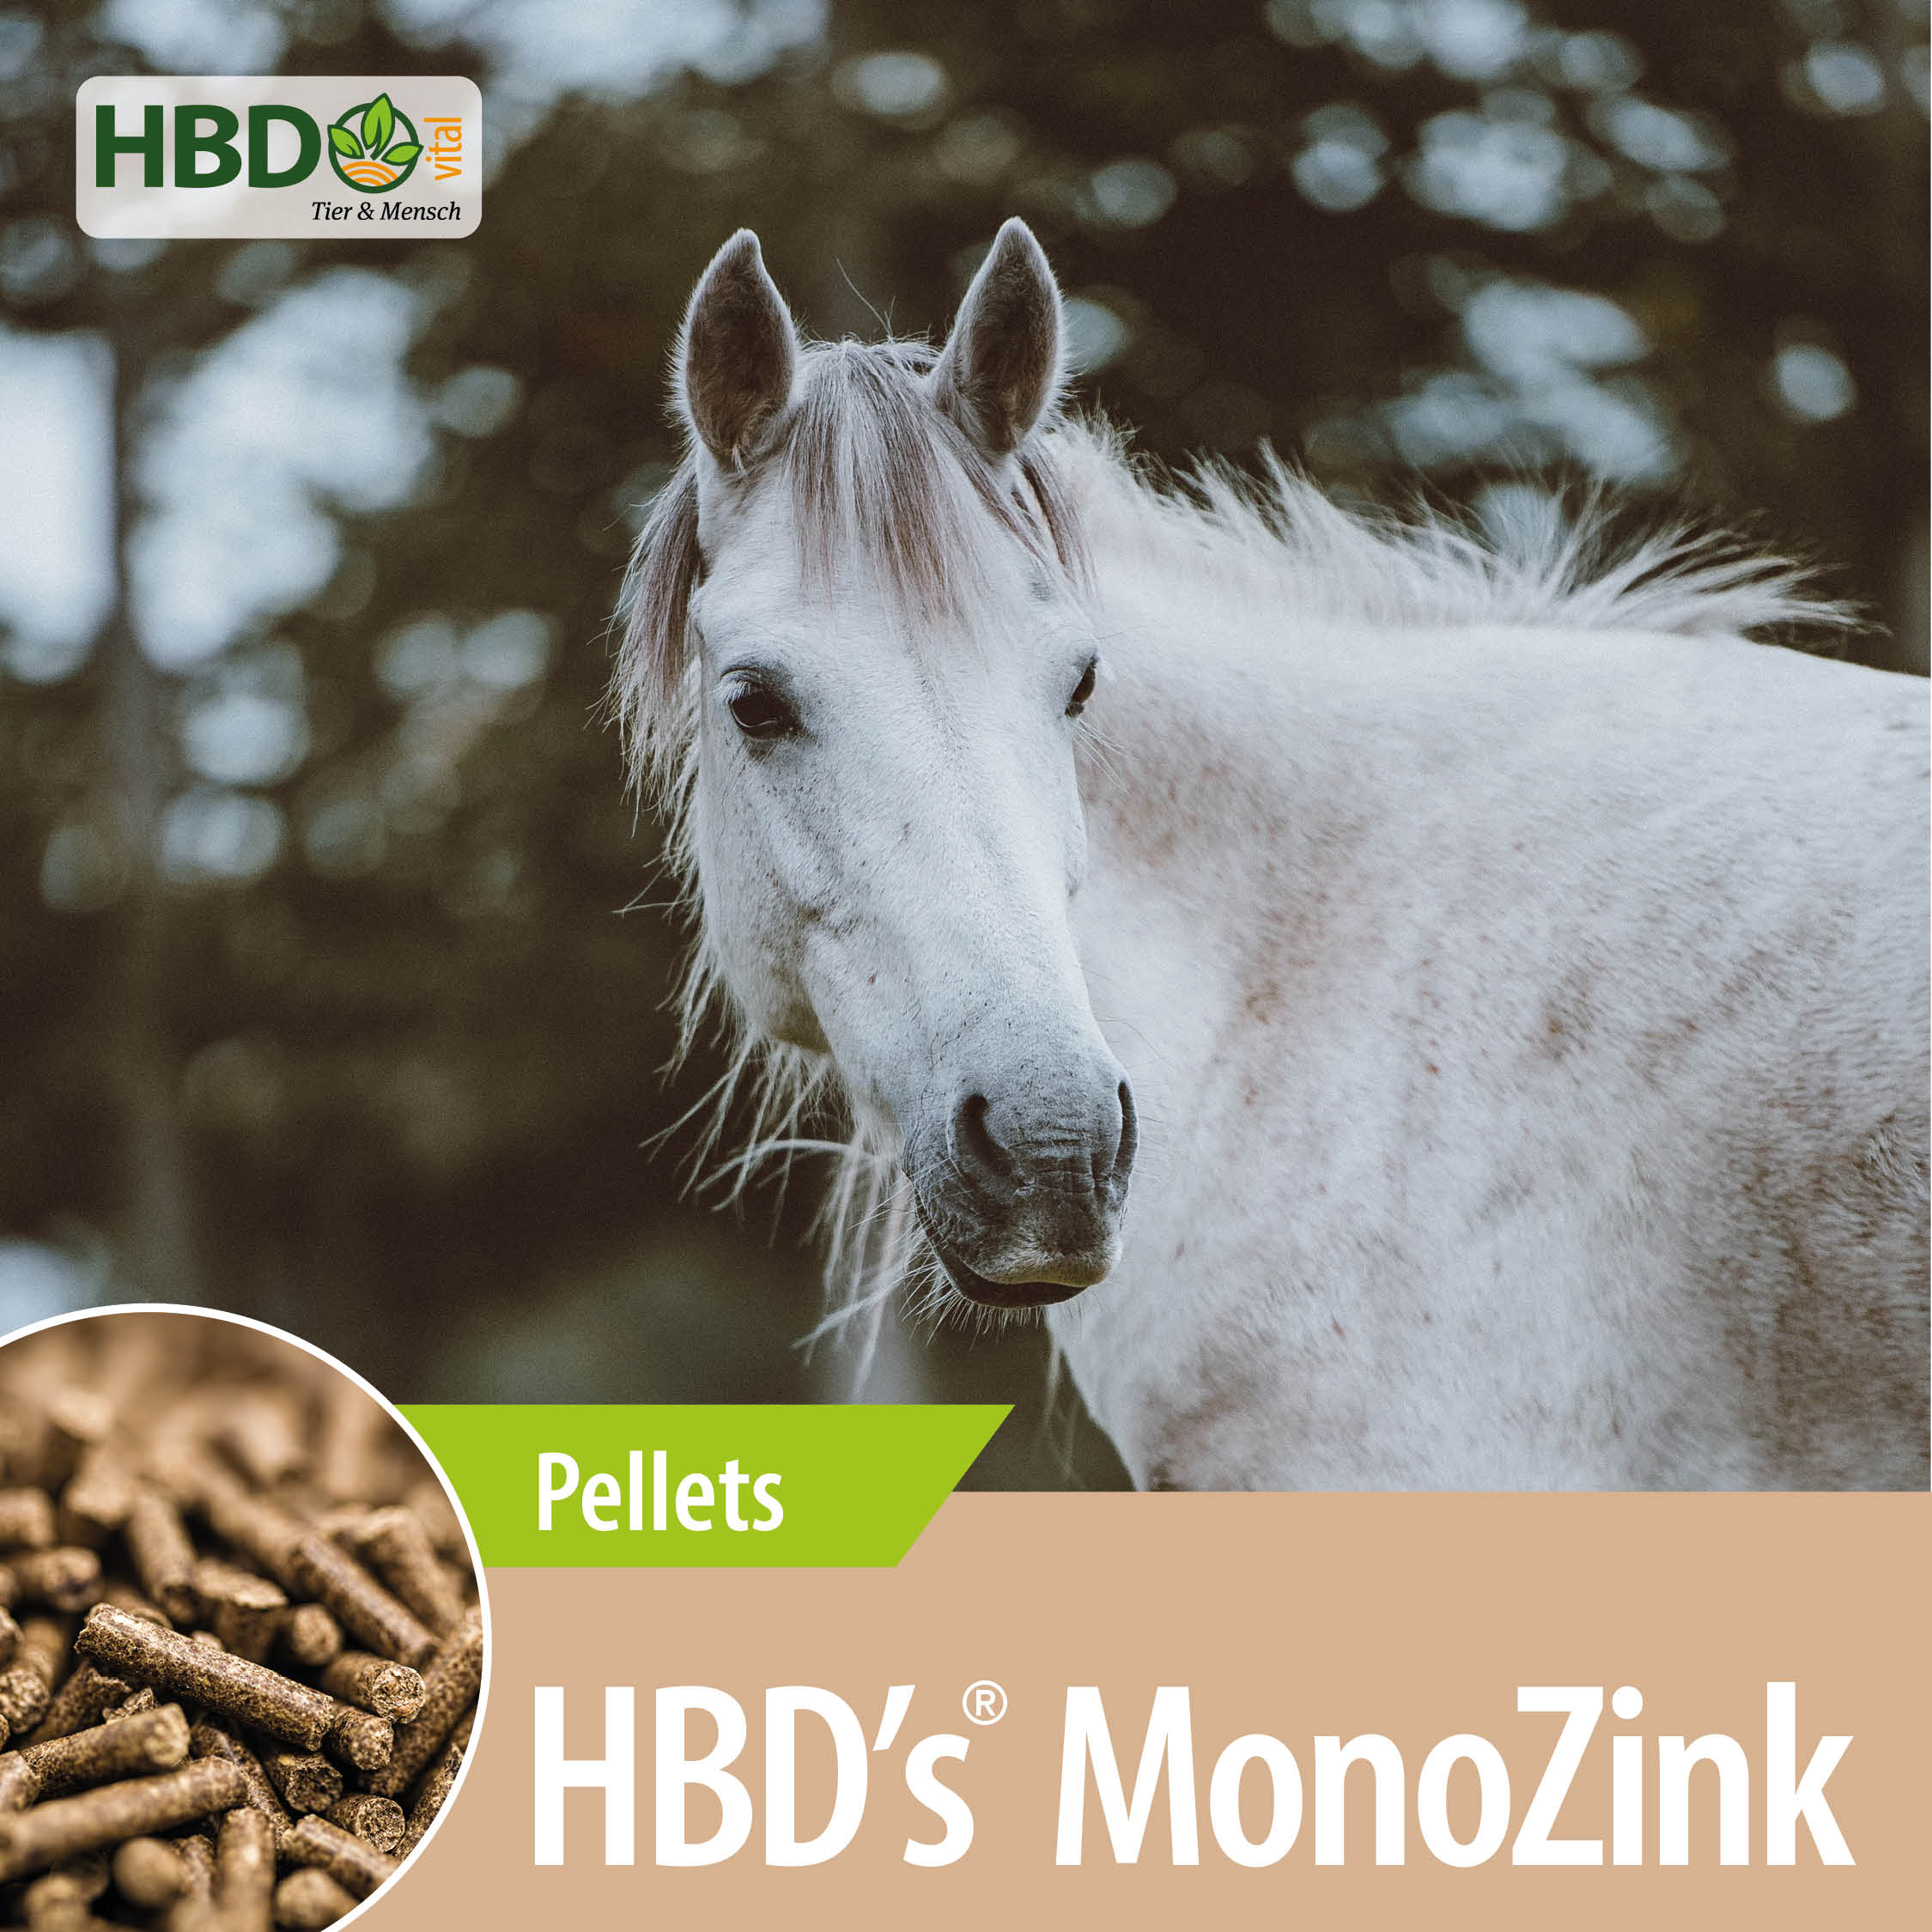 Shopbild für HBD’s Mono Zink - Das Bild zeigt den Produktnamen HBD’s MonoZink sowie den Hinweis, dass es sich um Pellets handelt. Ein weißes Pferd ist zu sehen.